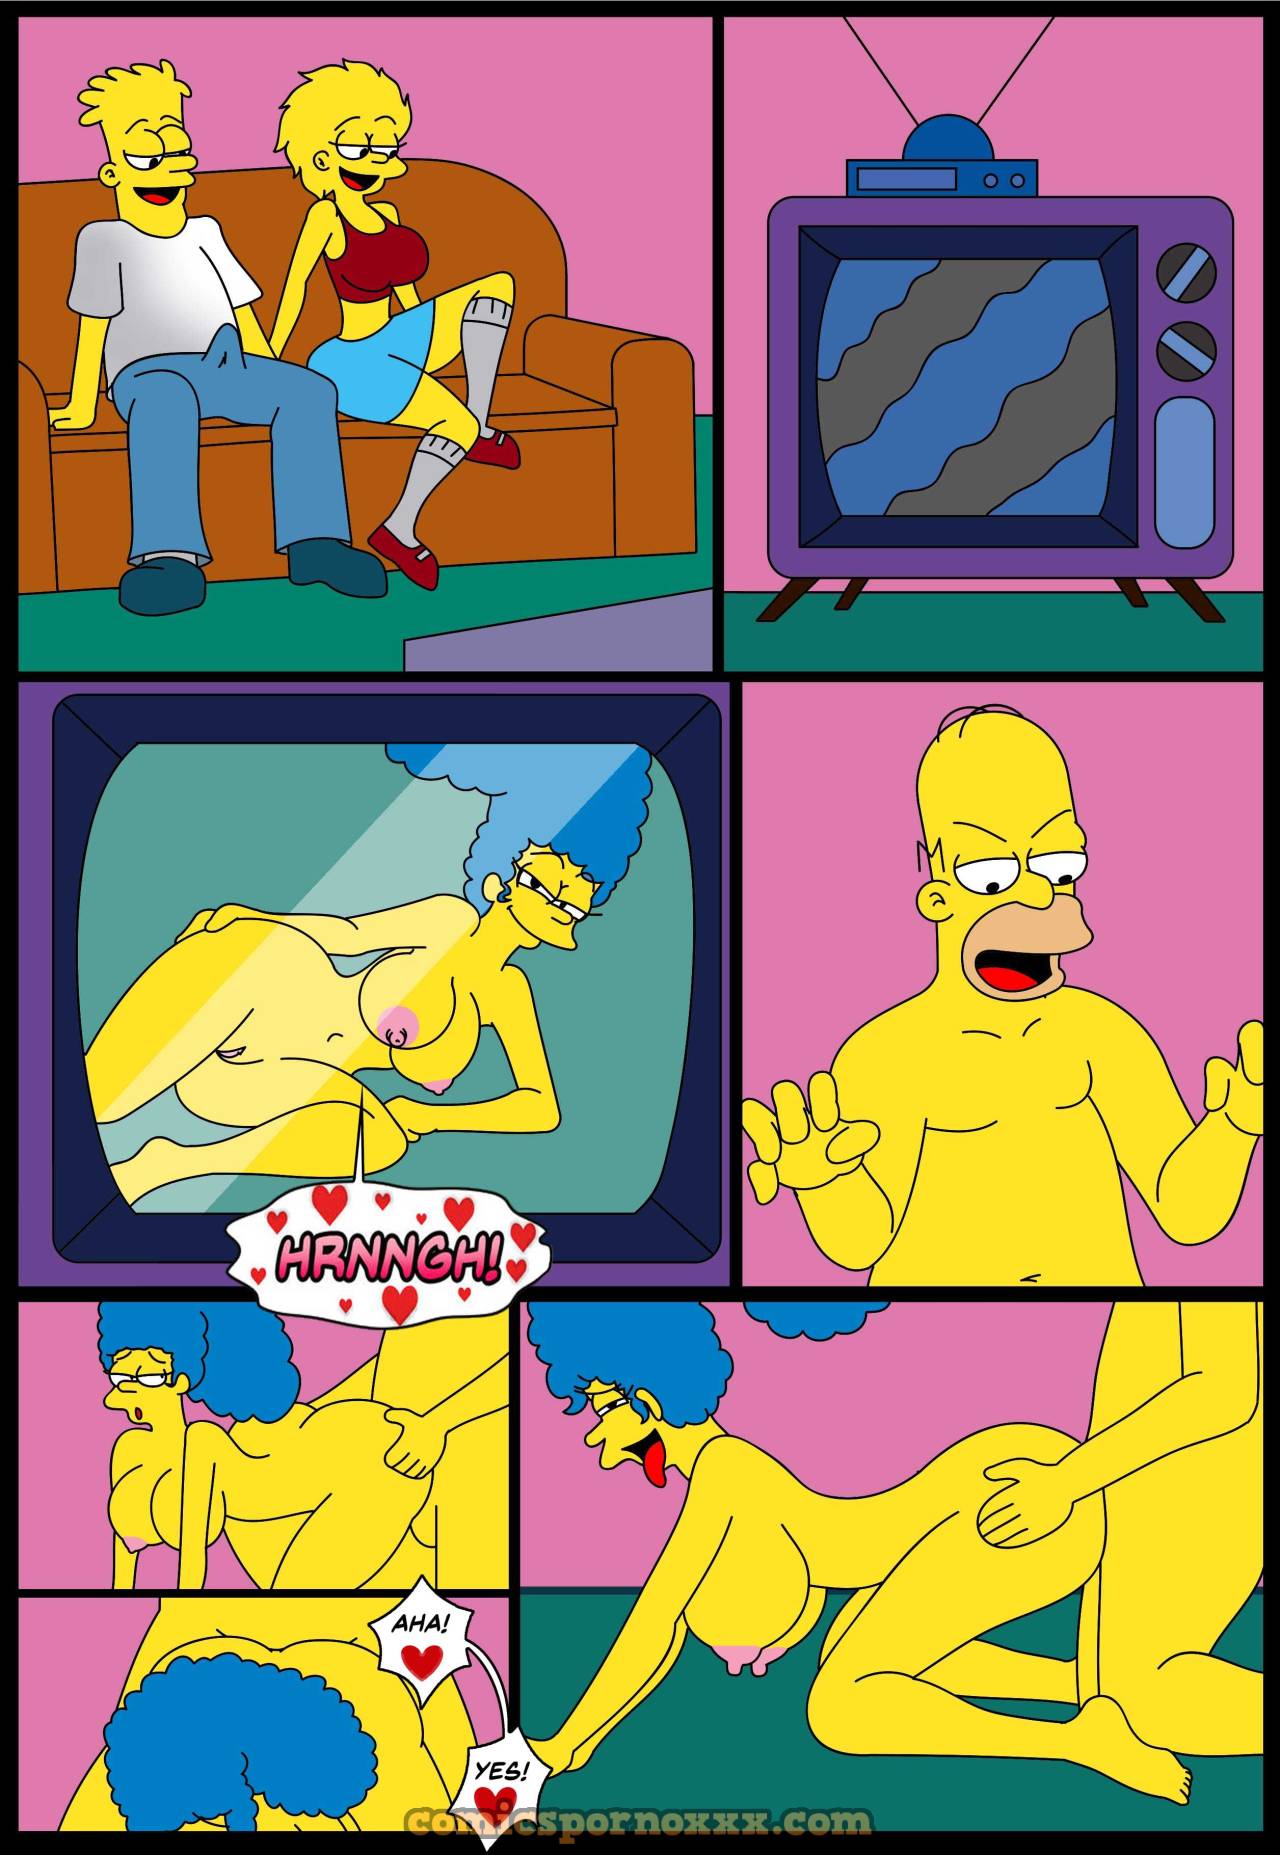 El Video Porno de Marge y Homero Simpson - 3 - Comics Porno - Hentai Manga - Cartoon XXX